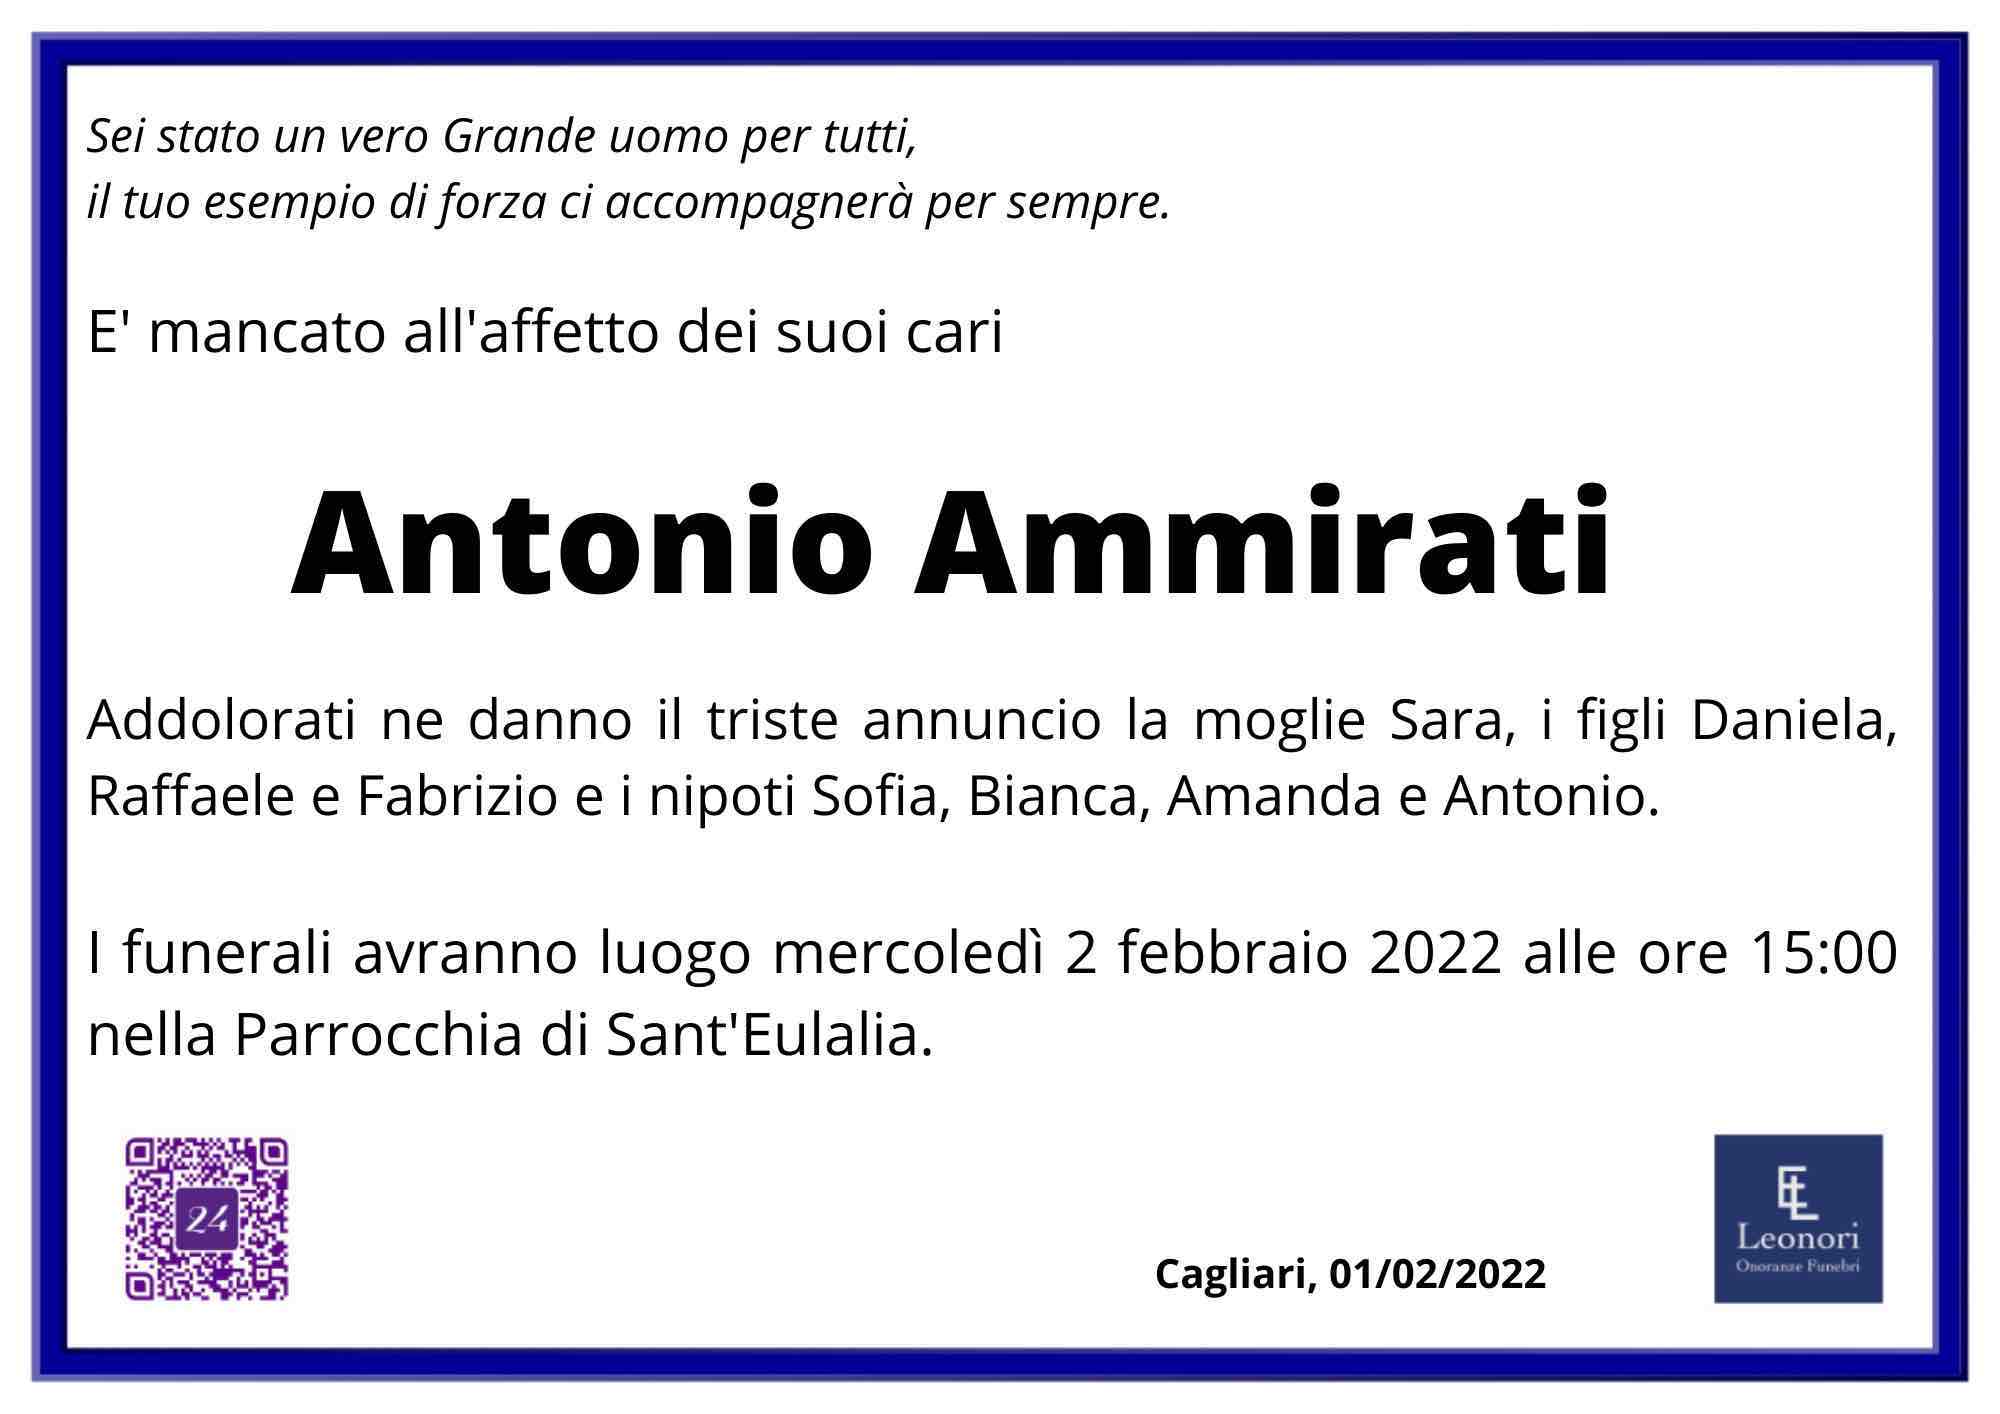 Antonio Ammirati